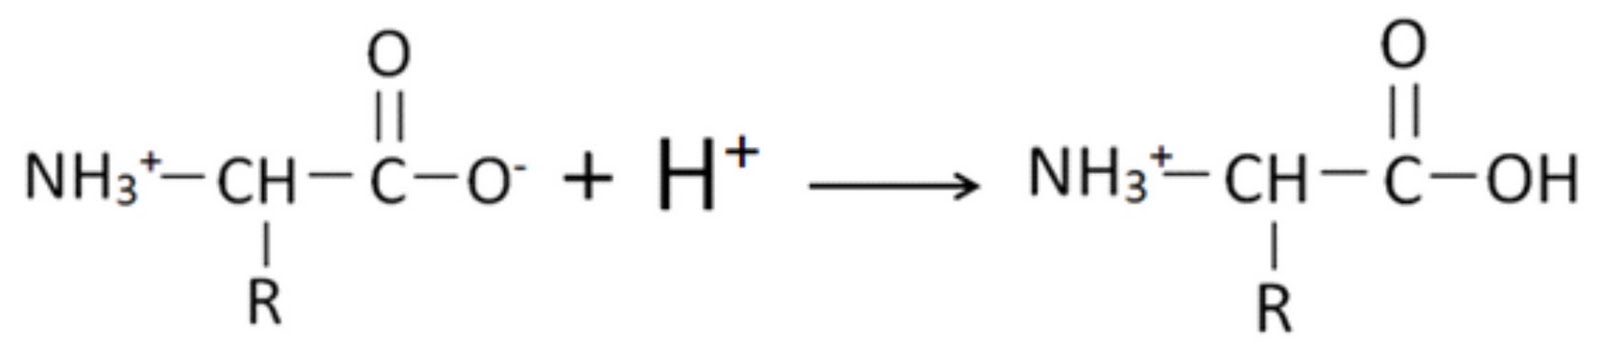 Акриловая кислота nh3. Этиламин этанол. Акриловая кислота с бромоводородом. Полимеризация акриловой кислоты. Серебро соляная кислота формула